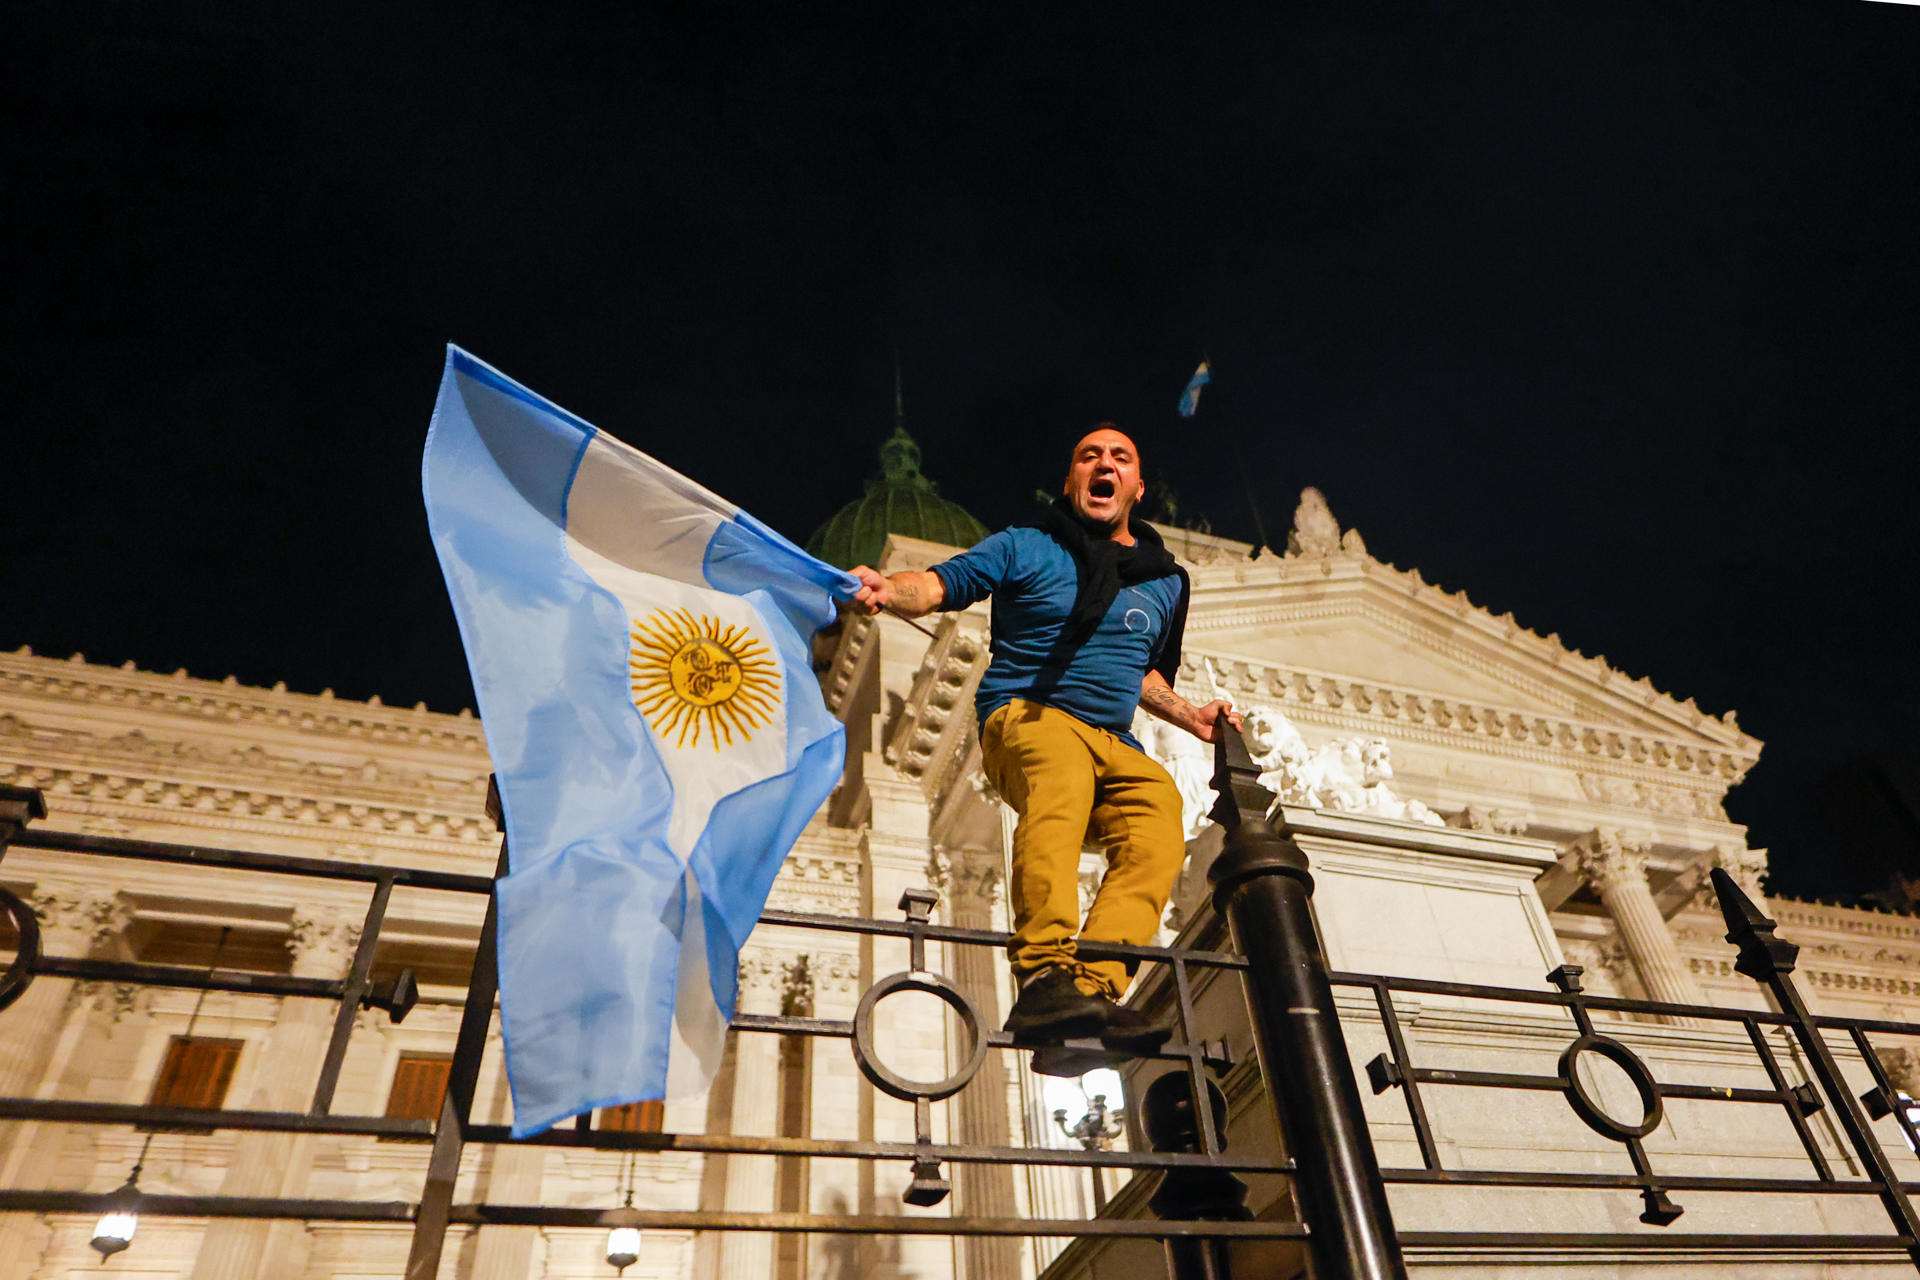 Shock en Argentina: Milei aprueba 300 medidas para disminuir el Estado, privatizar y desregular